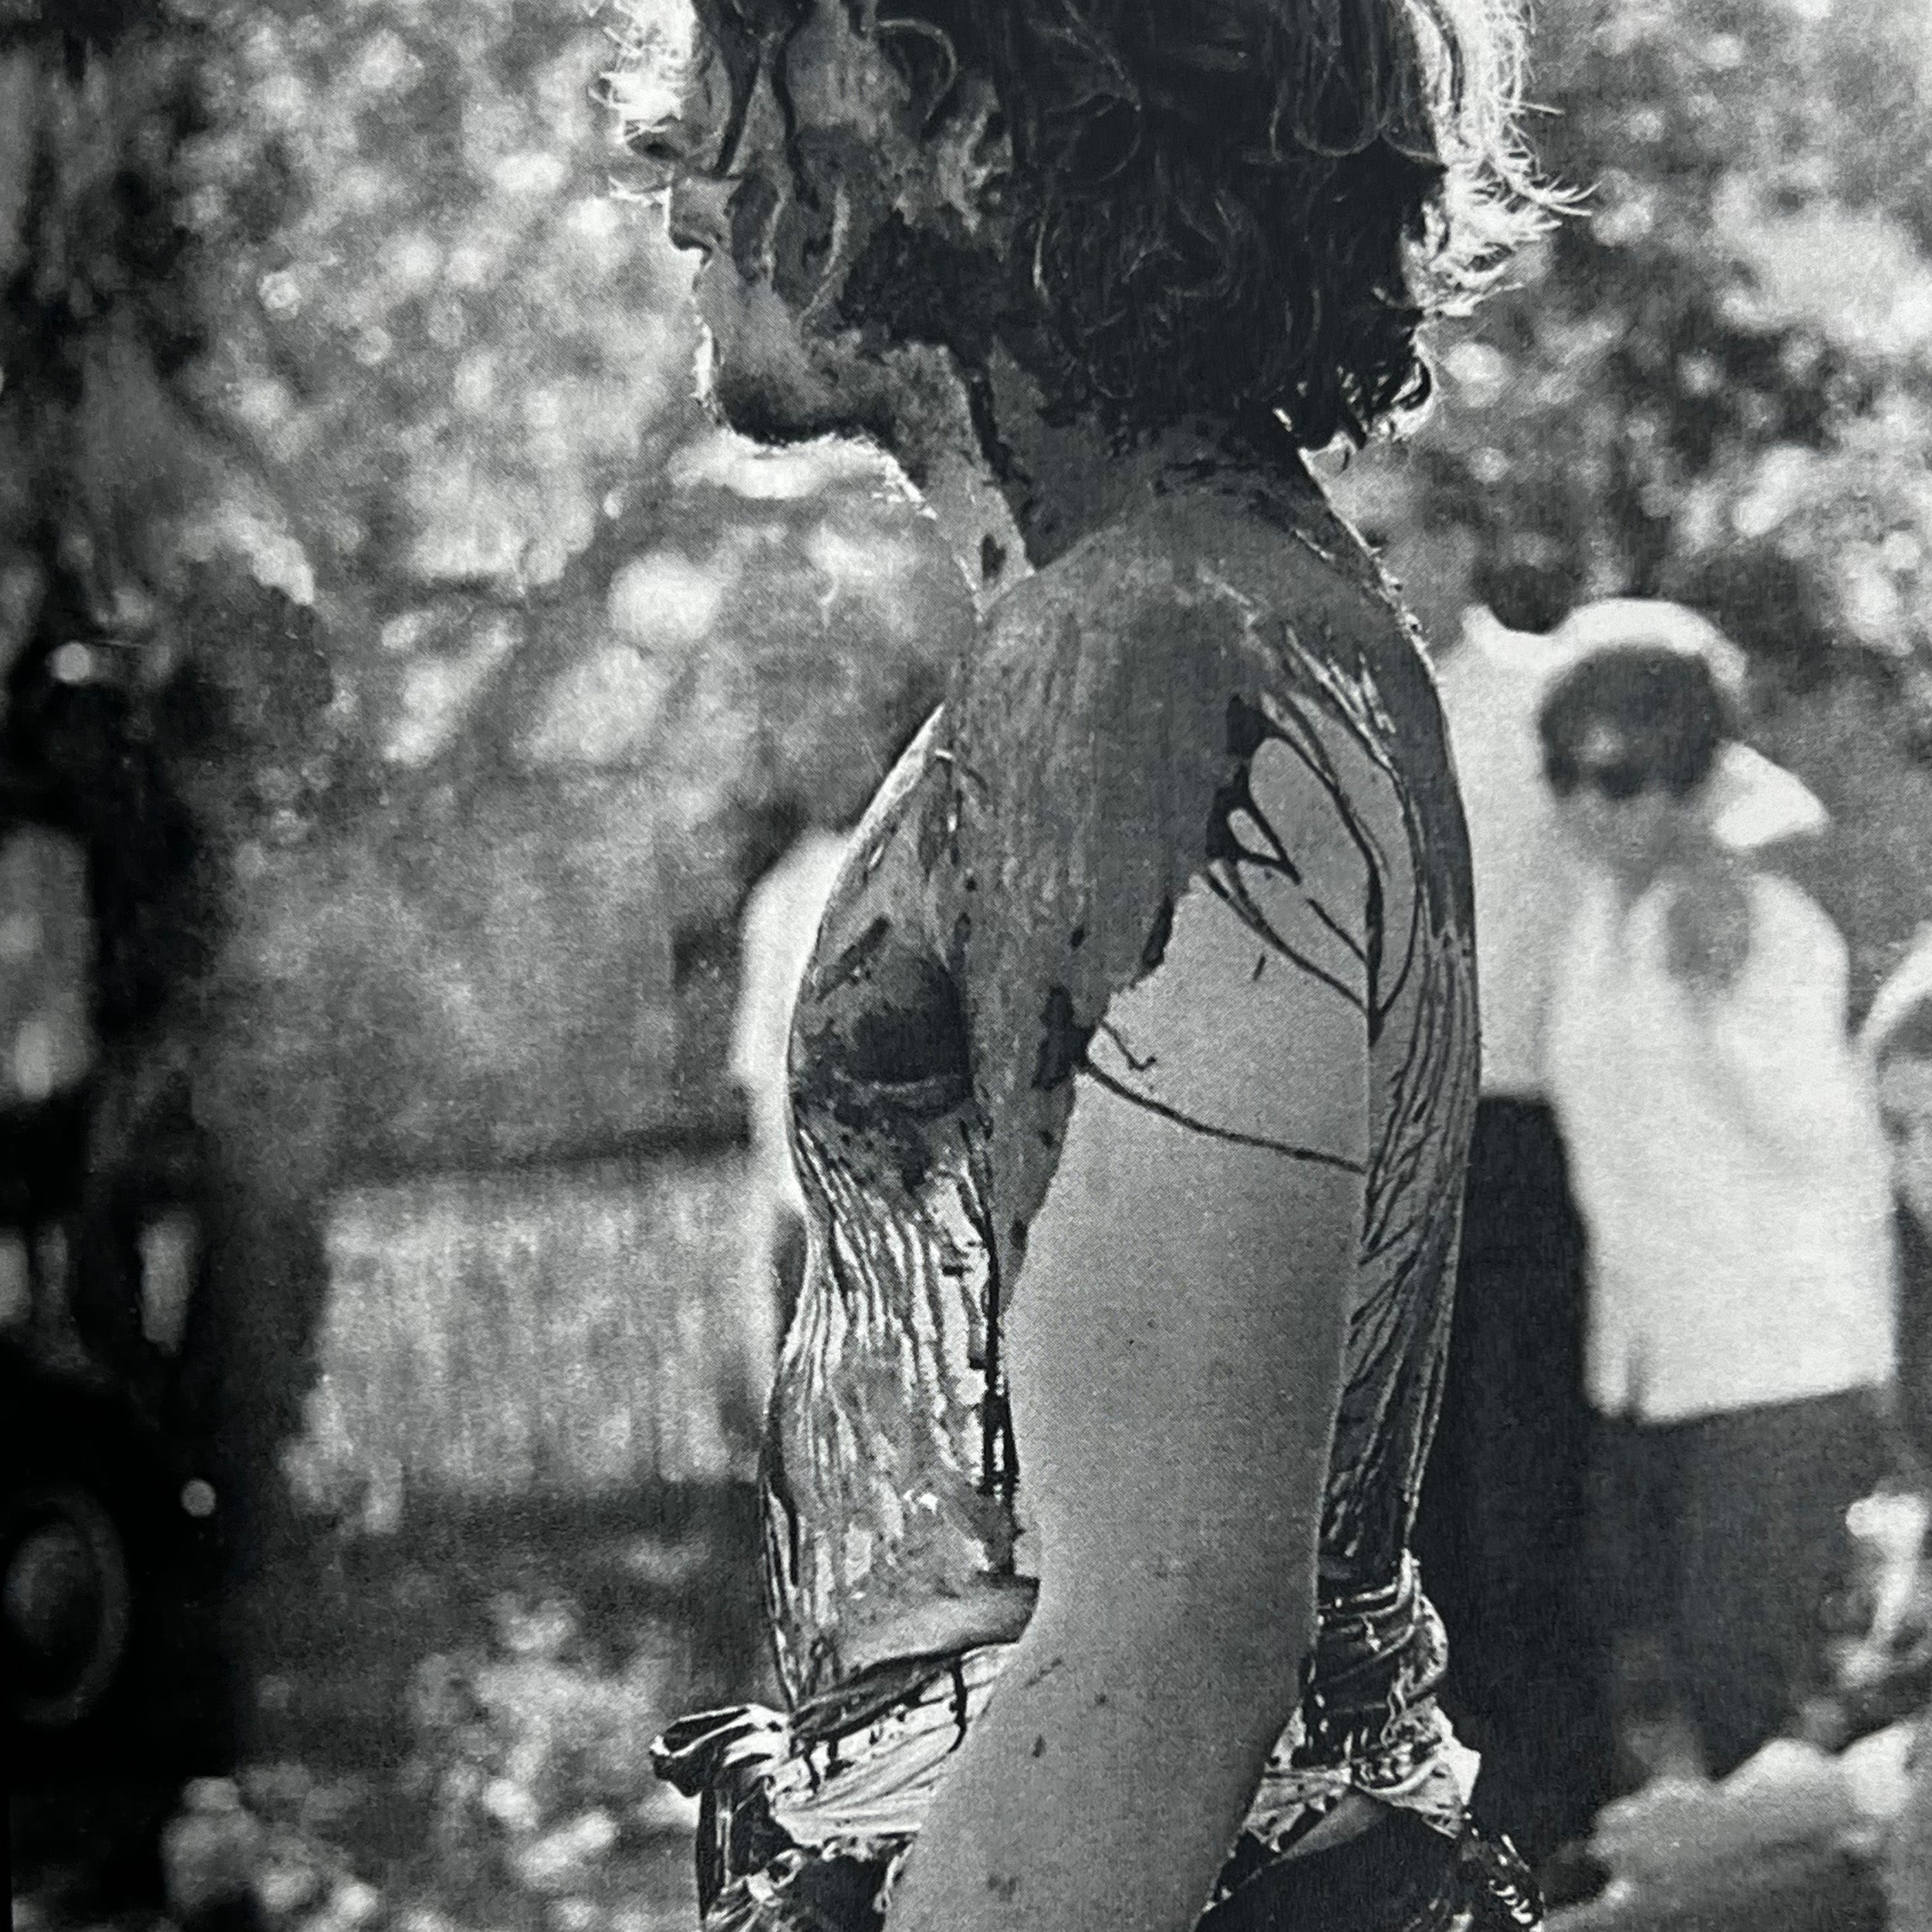 PEOPLE'S PARK BERKELEY RIOTS 1969 - JANINE WIEDEL